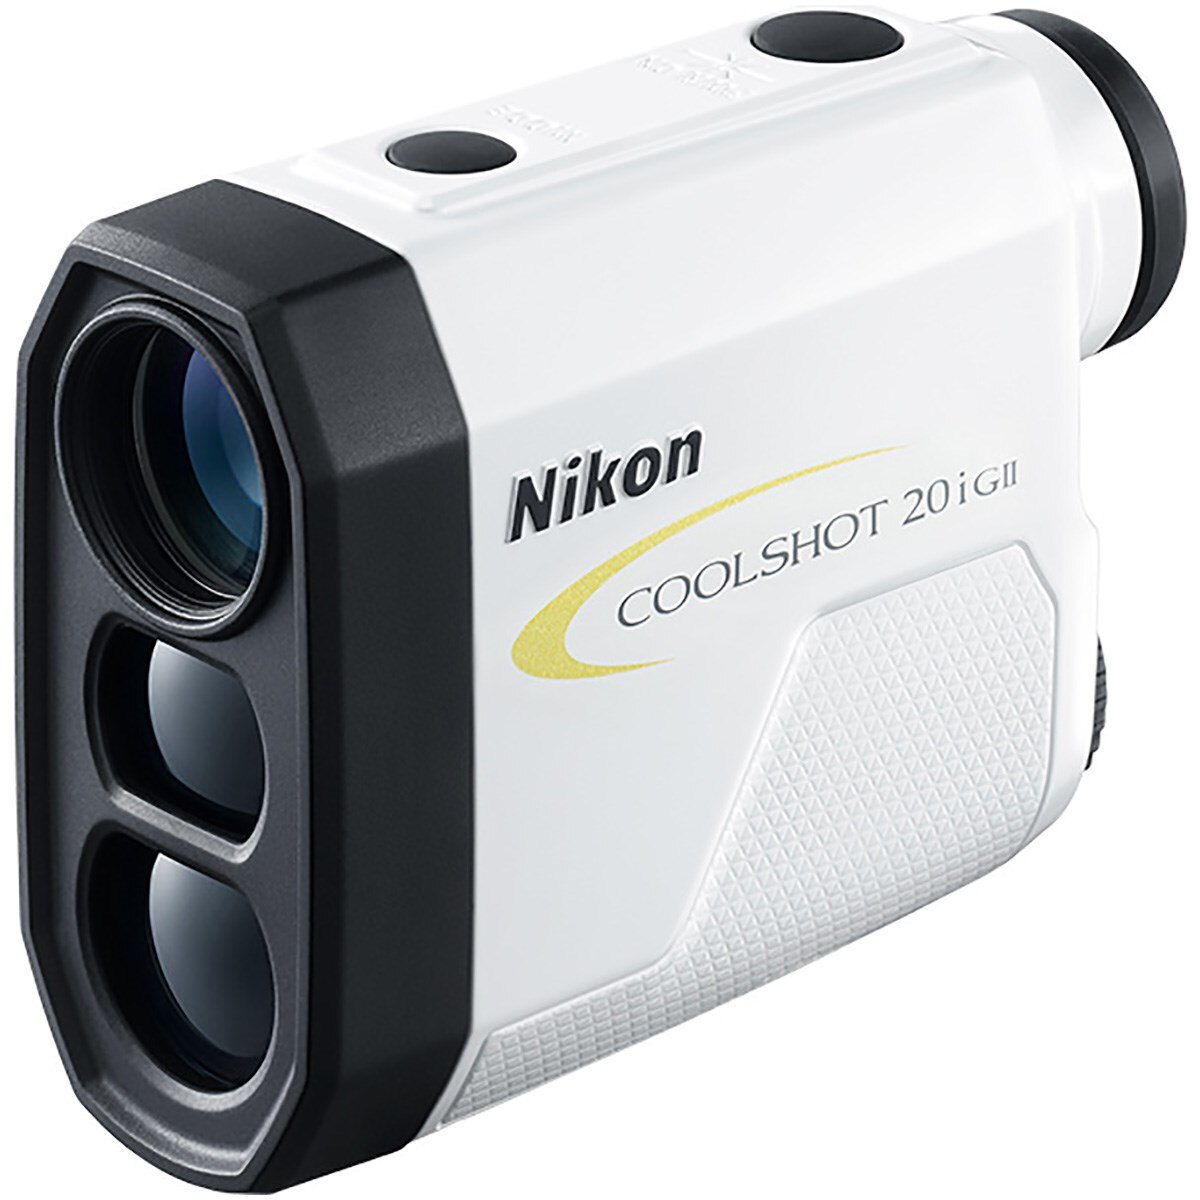 Nikon COOLSHOT 20I GII　ニコン クールショット20i GⅡ